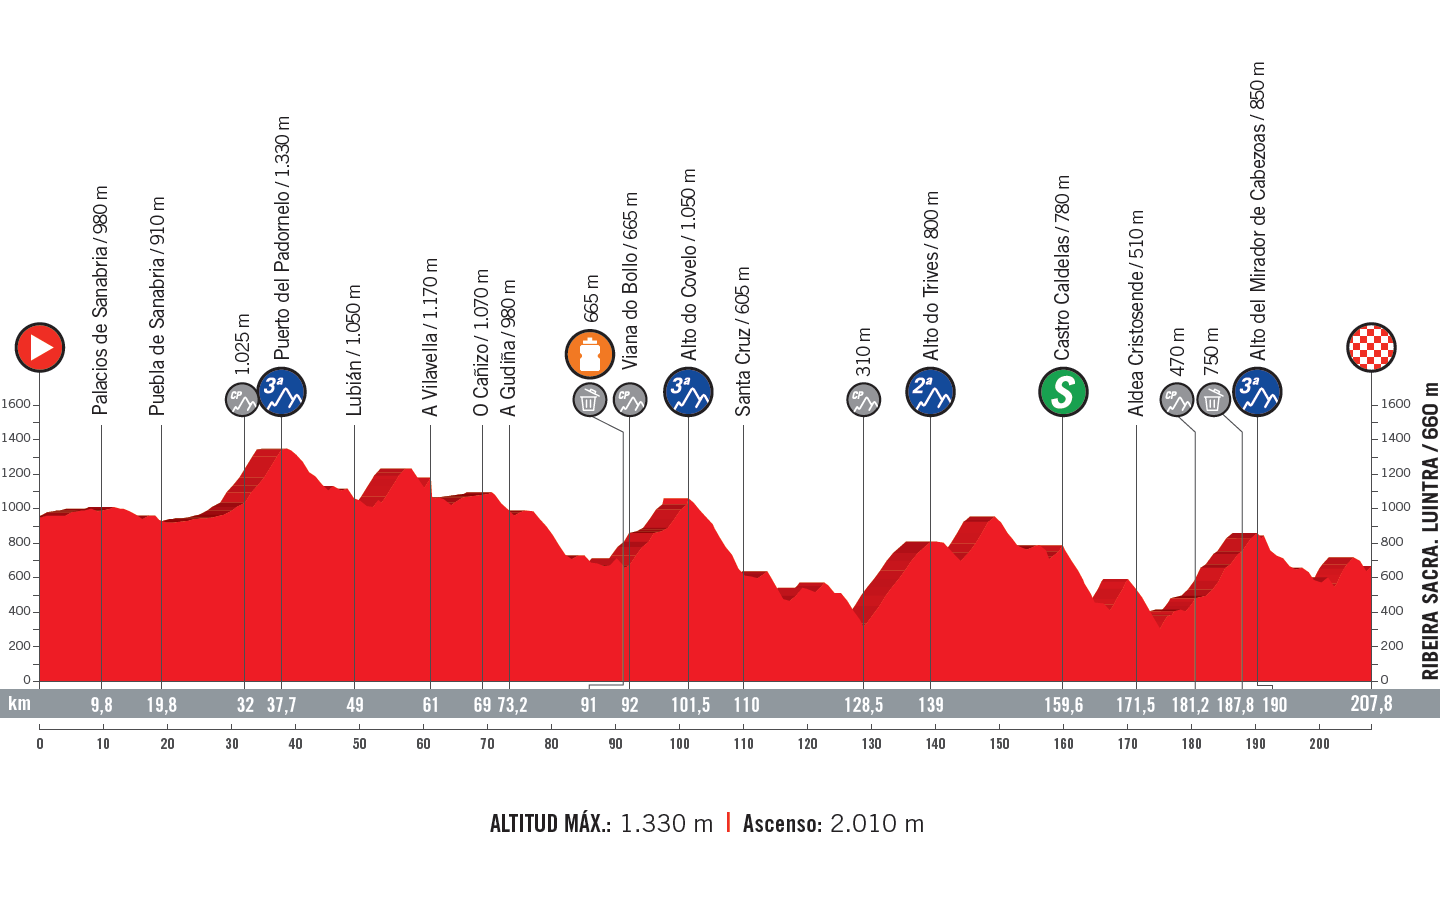 profil 11. etapu Vuelta a Espana 2018